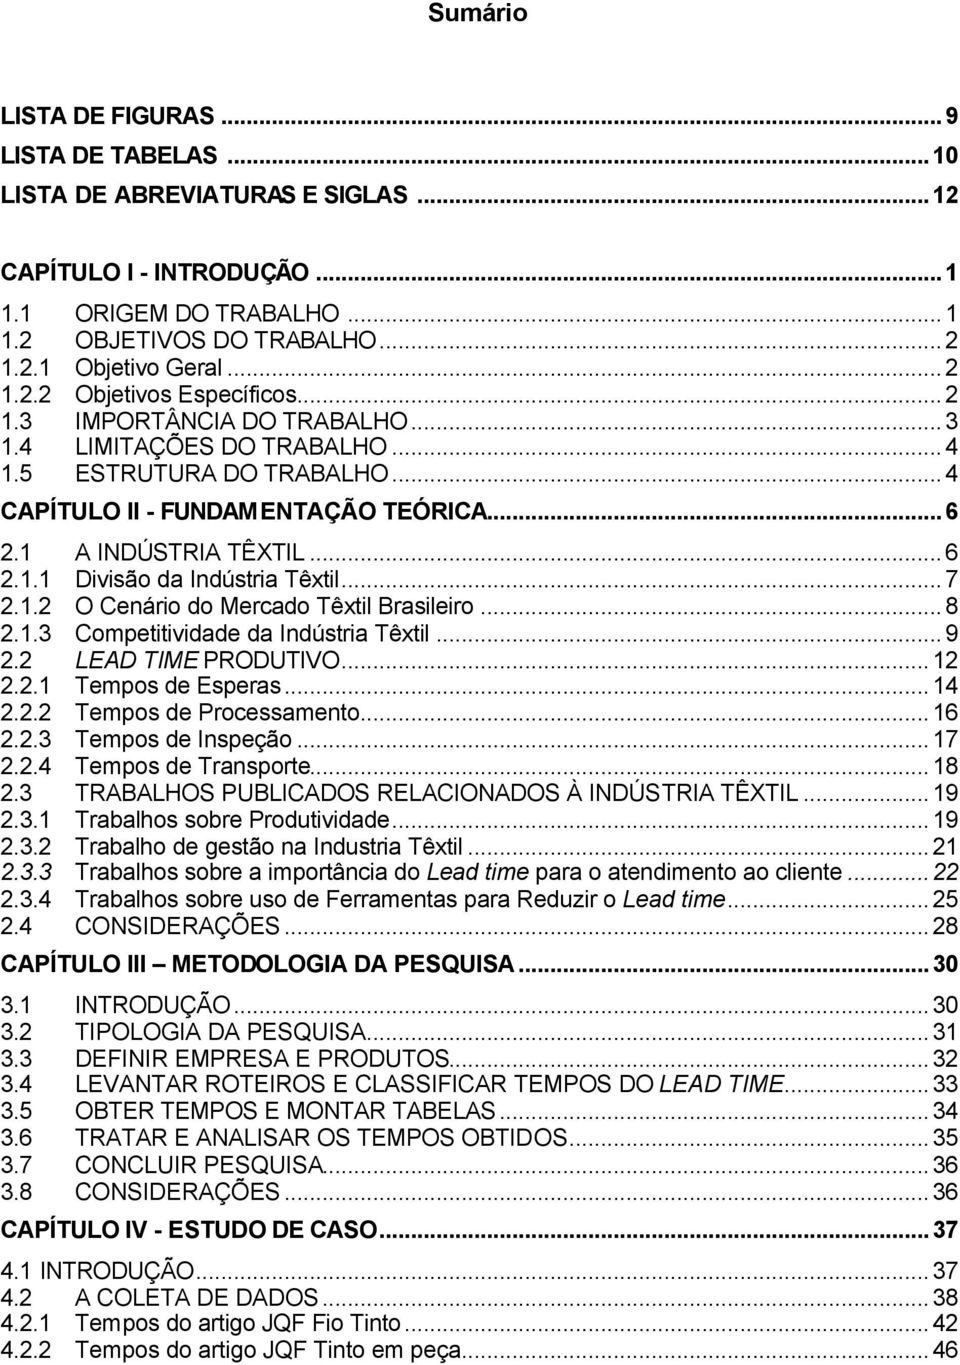 ..7 2.1.2 O Cenário do Mercado Têxtil Brasileiro...8 2.1.3 Competitividade da Indústria Têxtil...9 2.2 LEAD TIME PRODUTIVO...12 2.2.1 Tempos de Esperas...14 2.2.2 Tempos de Processamento...16 2.2.3 Tempos de Inspeção.